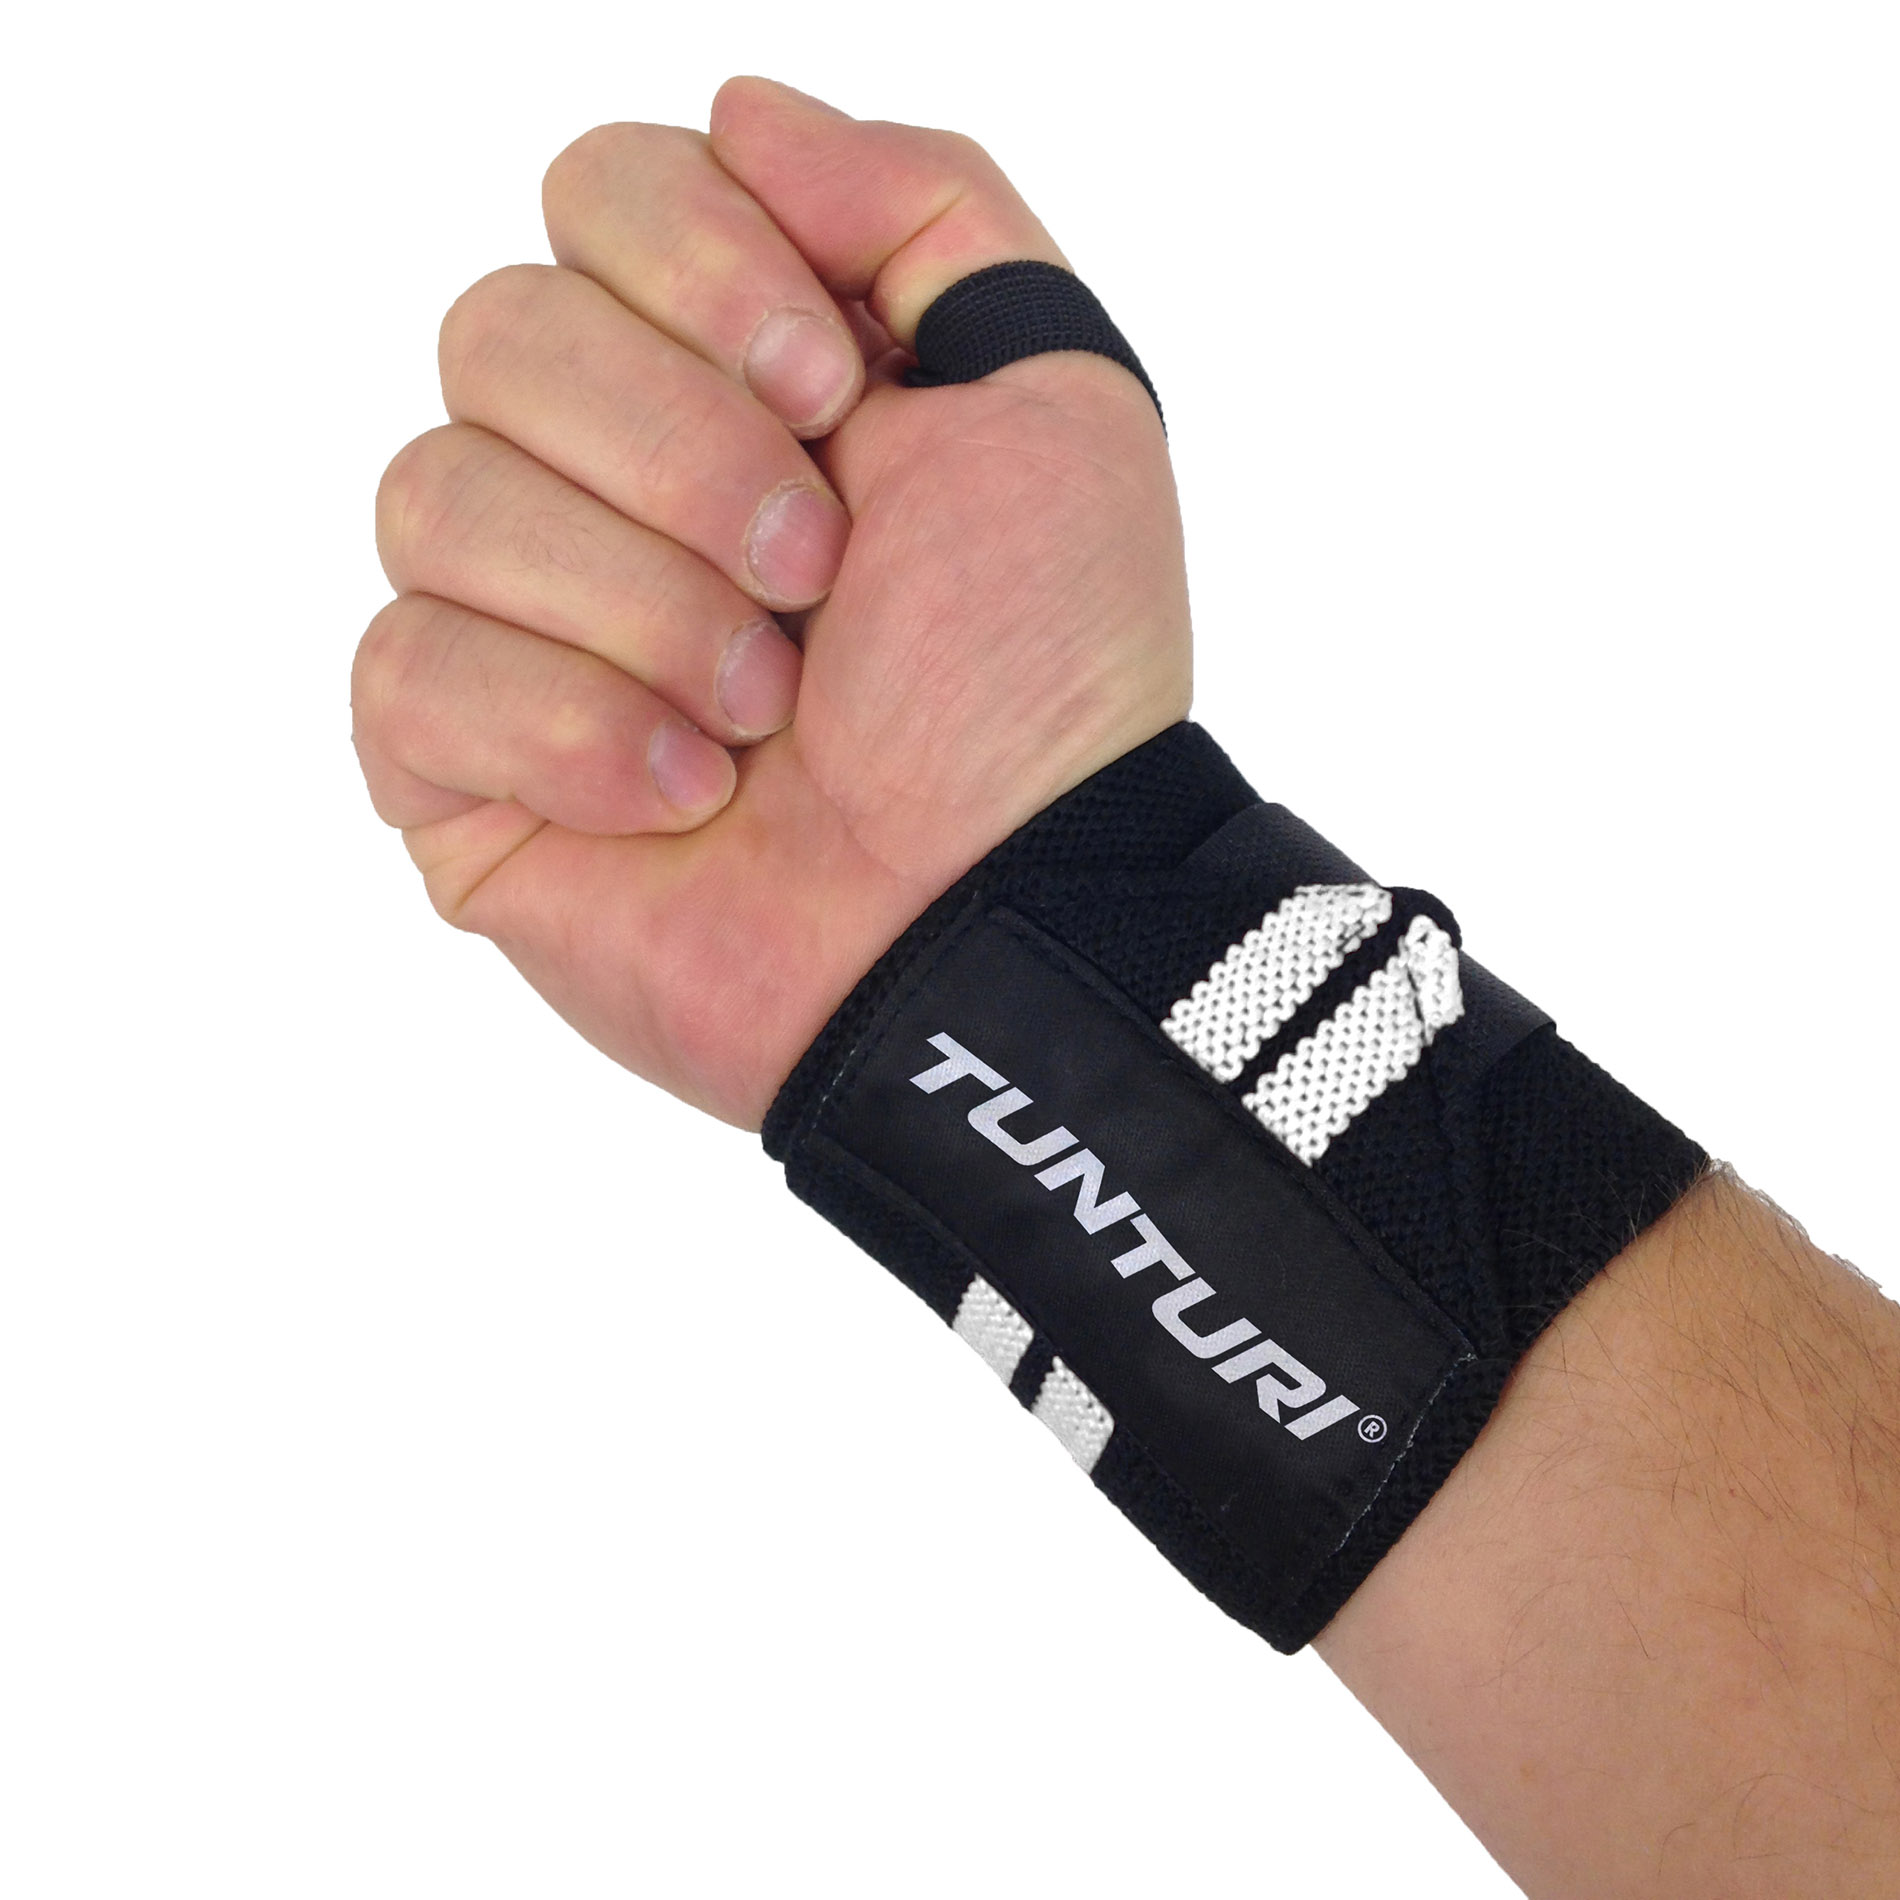 Functional Training Wrist Wraps - Pols Wraps